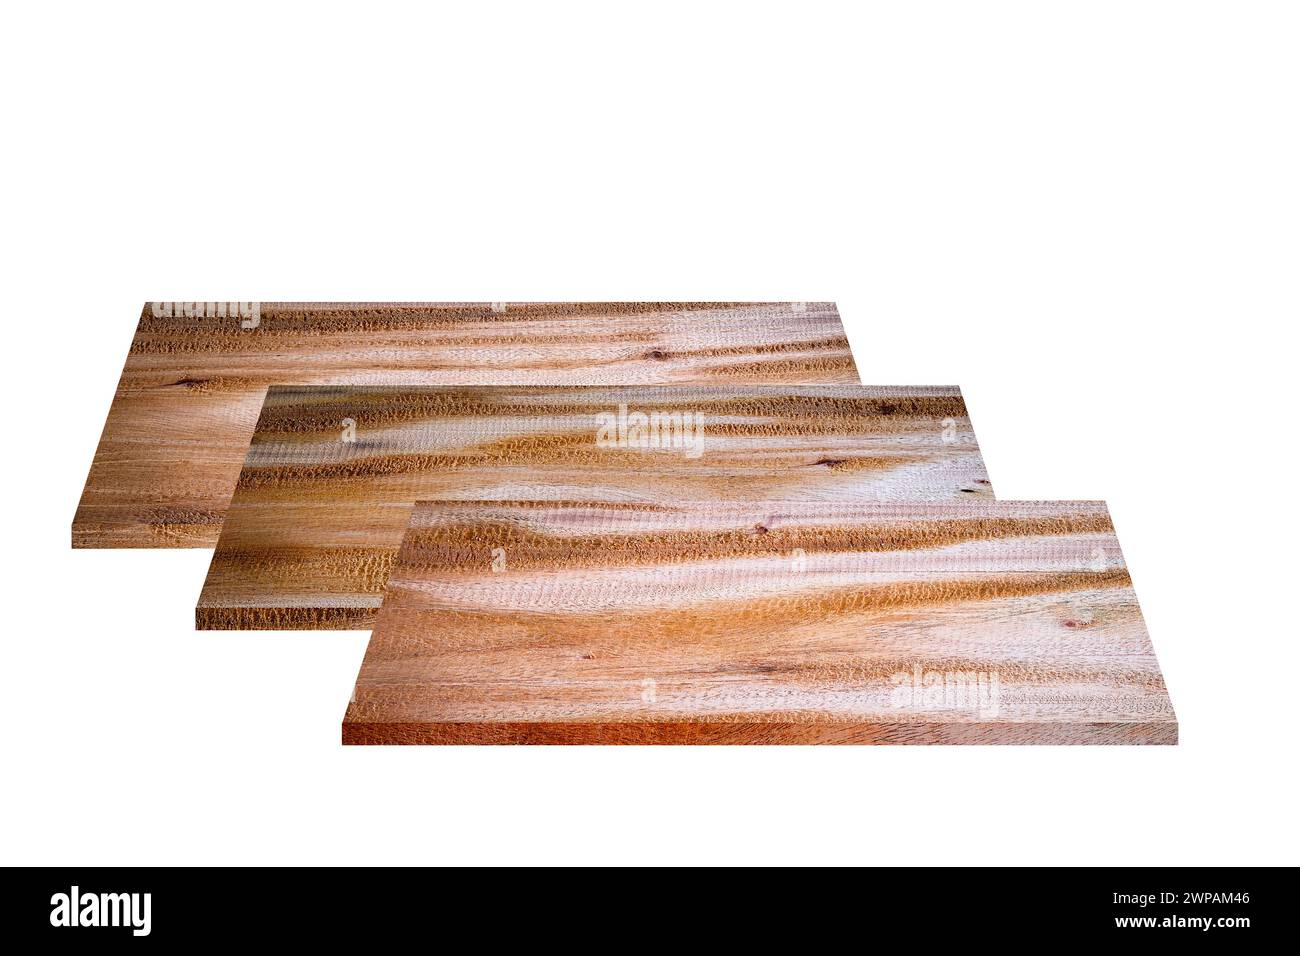 Empilé matériau de planche de bois vide sur forme carrée pour l'utilisation faire un meuble, la maison de construction ou décorer l'intérieur et l'extérieur, isolé sur dos blanc Banque D'Images